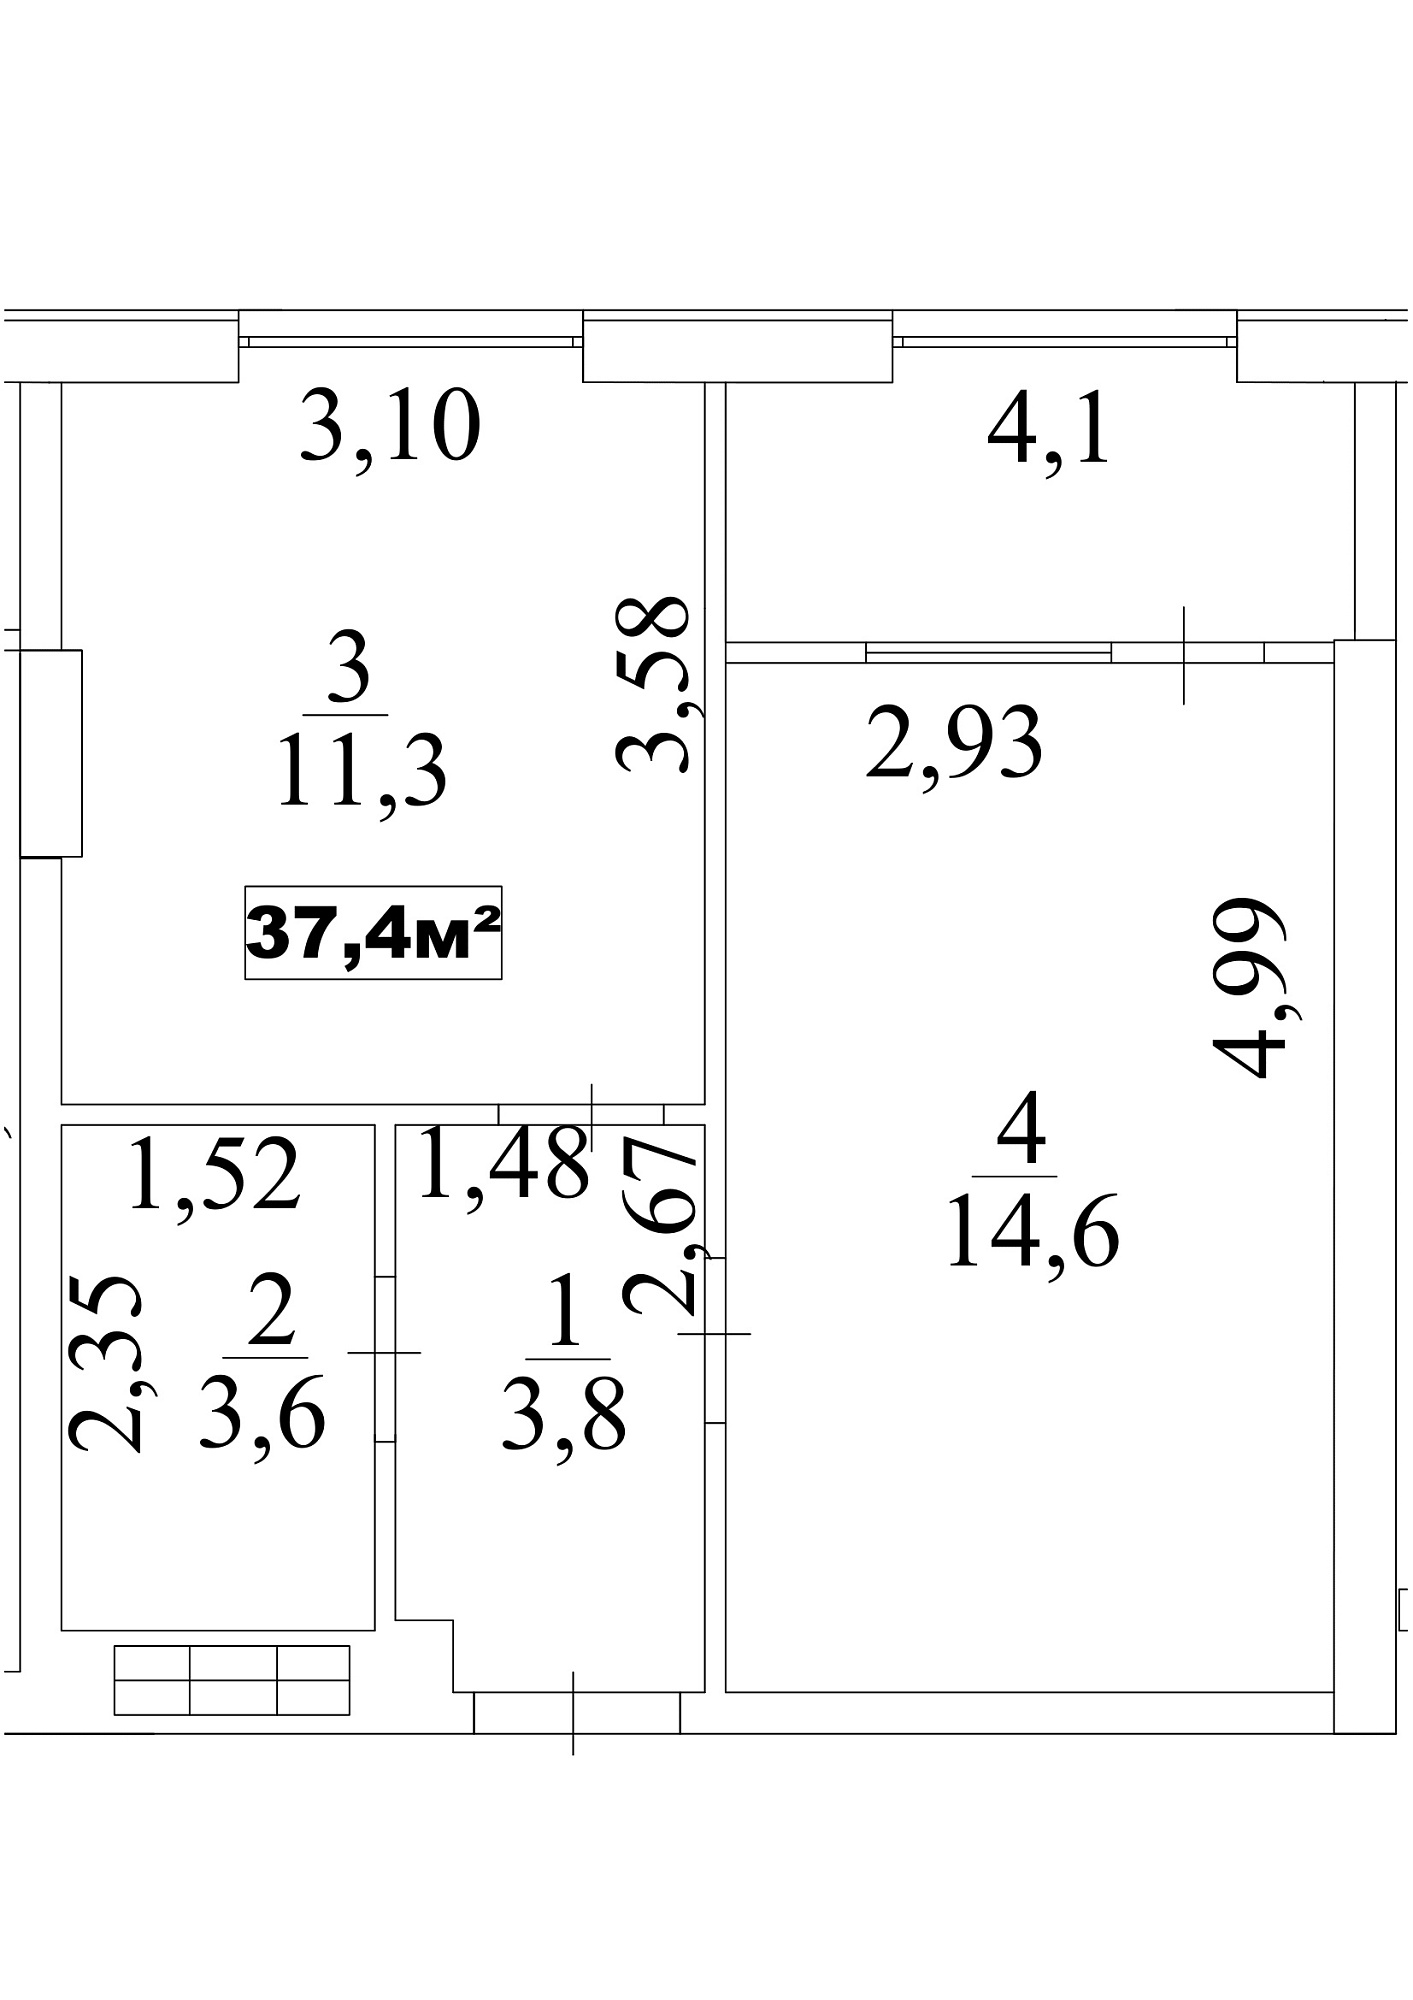 Планування 1-к квартира площею 37.4м2, AB-10-08/0070а.